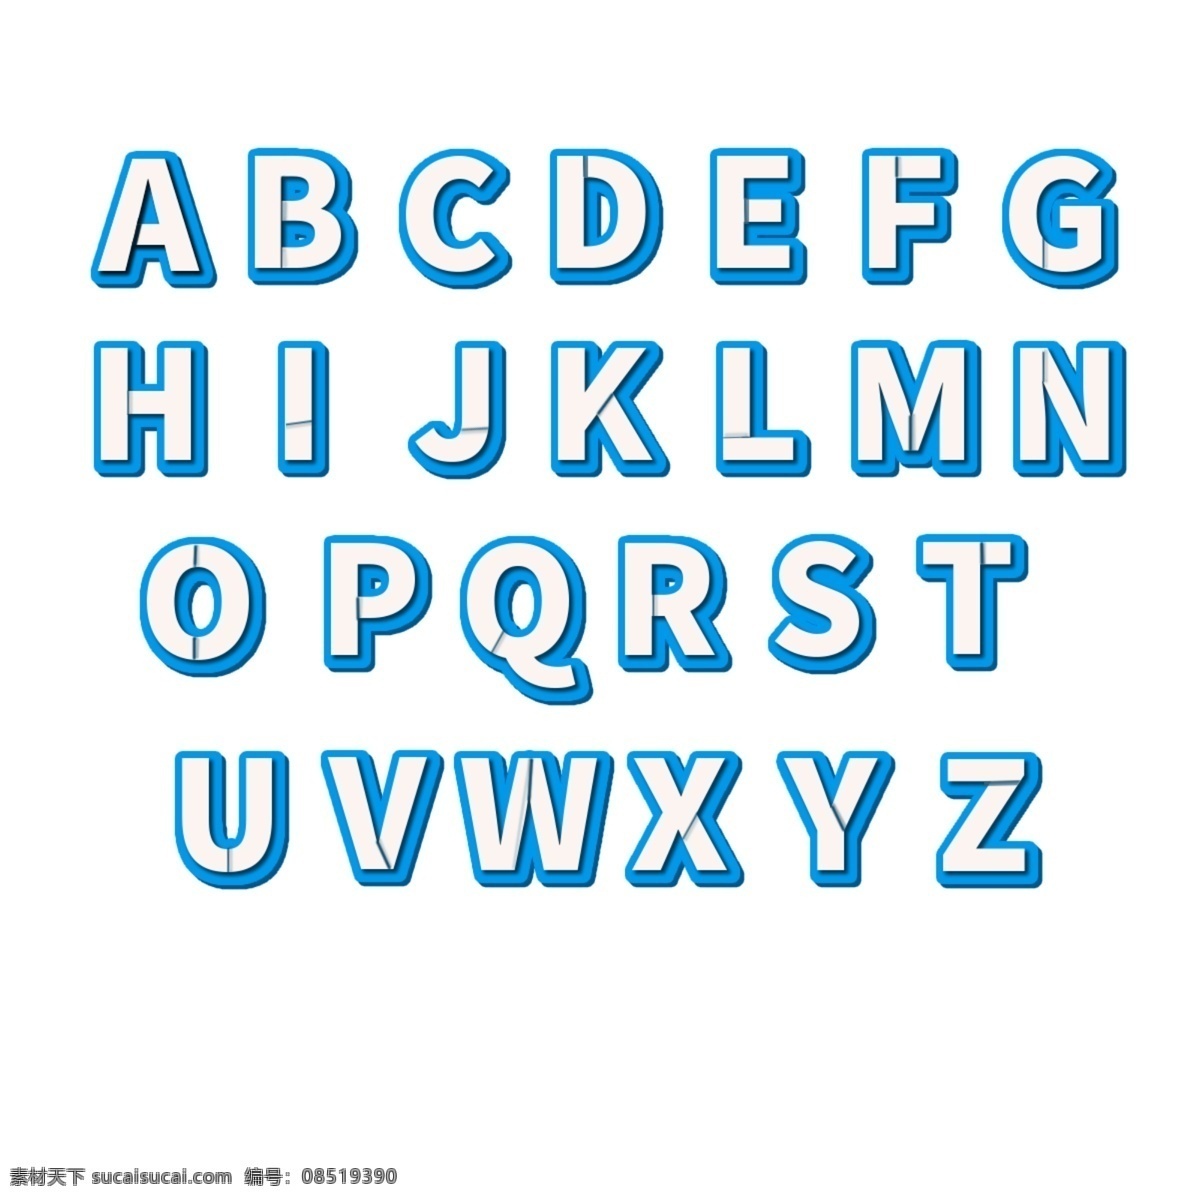 3d立体字母 3d字母 立体字母 创意字母 图层样式字母 白色字母 绚丽字母 炫酷字母 蓝色字母 描边字母 艺术字母 时尚字母 现代字母 大写字母 图层样式 数字字母 标志图标 其他图标